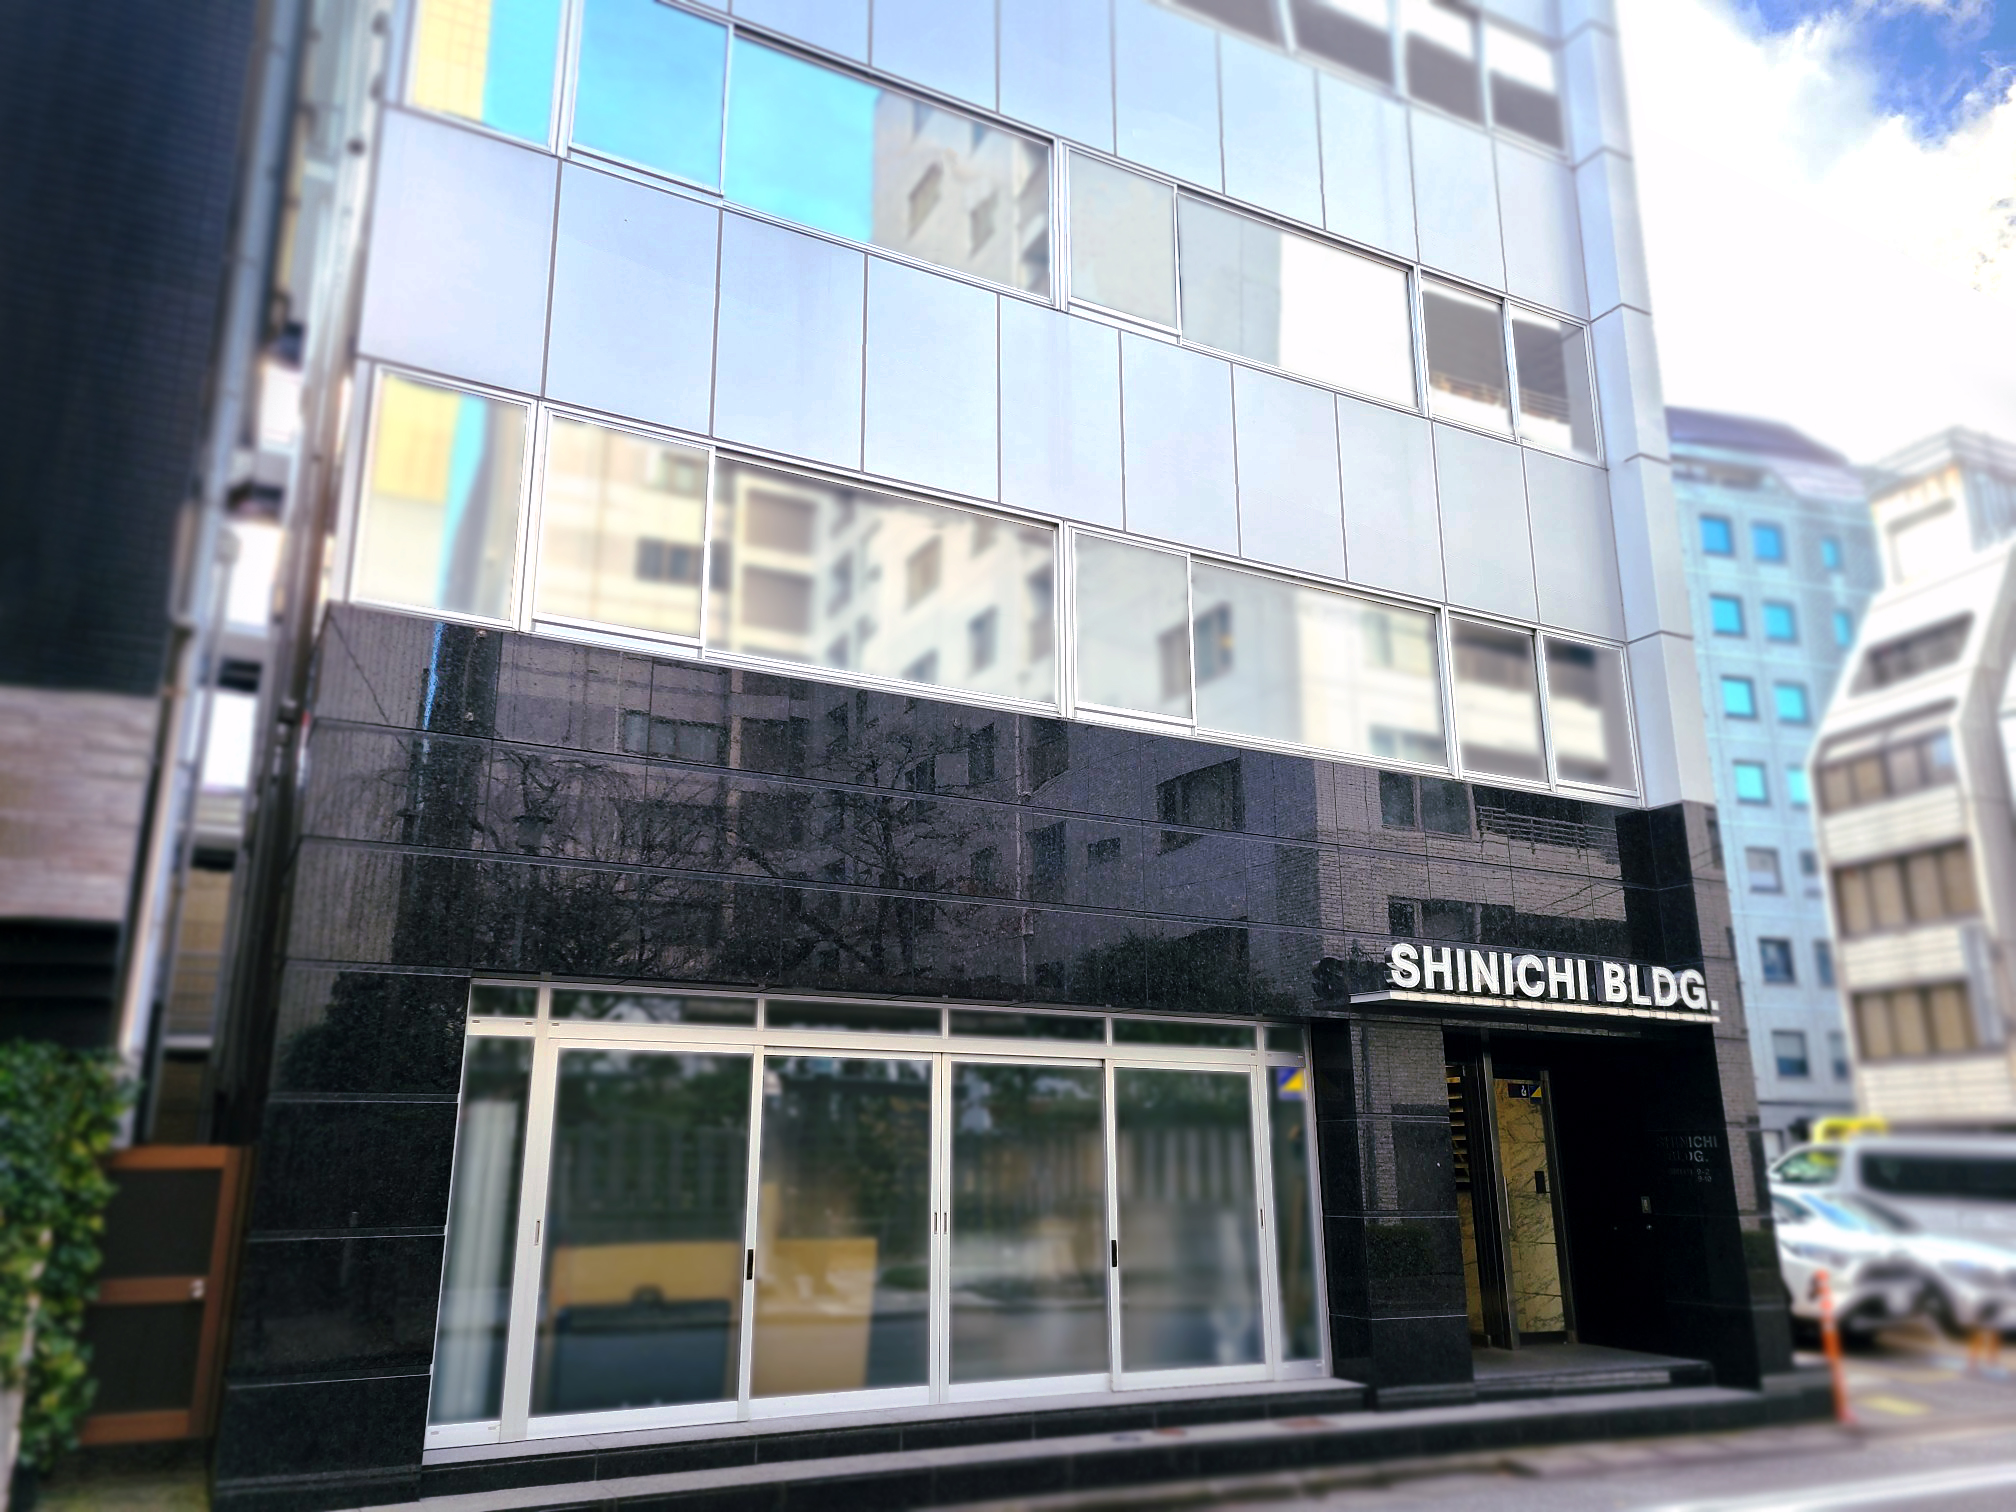 丸隆六甲容器株式会社の本社ビルの画像